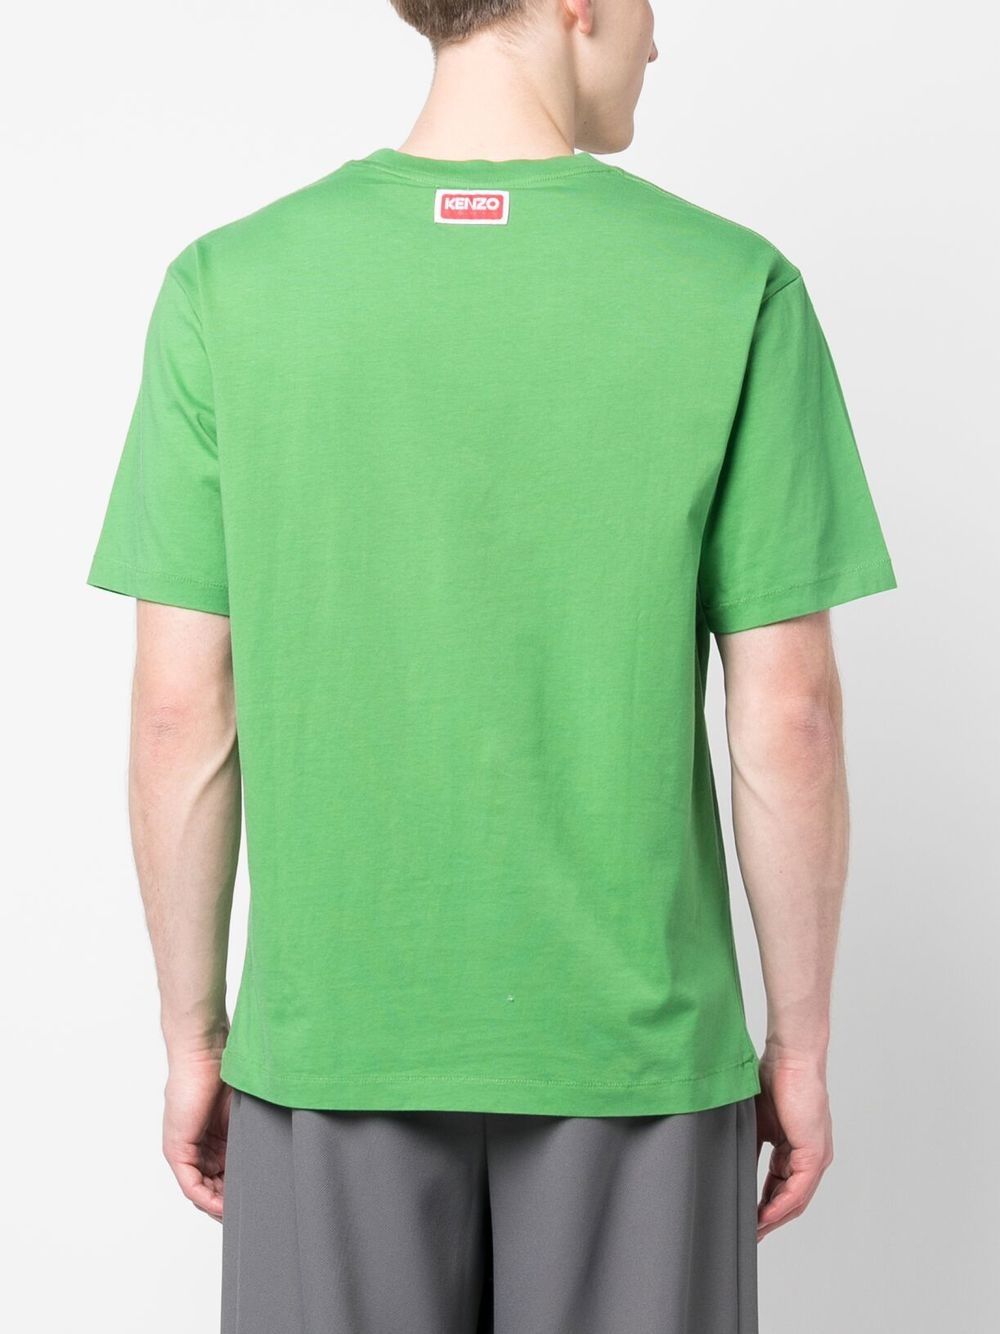 Kenzo T-shirt 'Boke Flower' Green - Lothaire